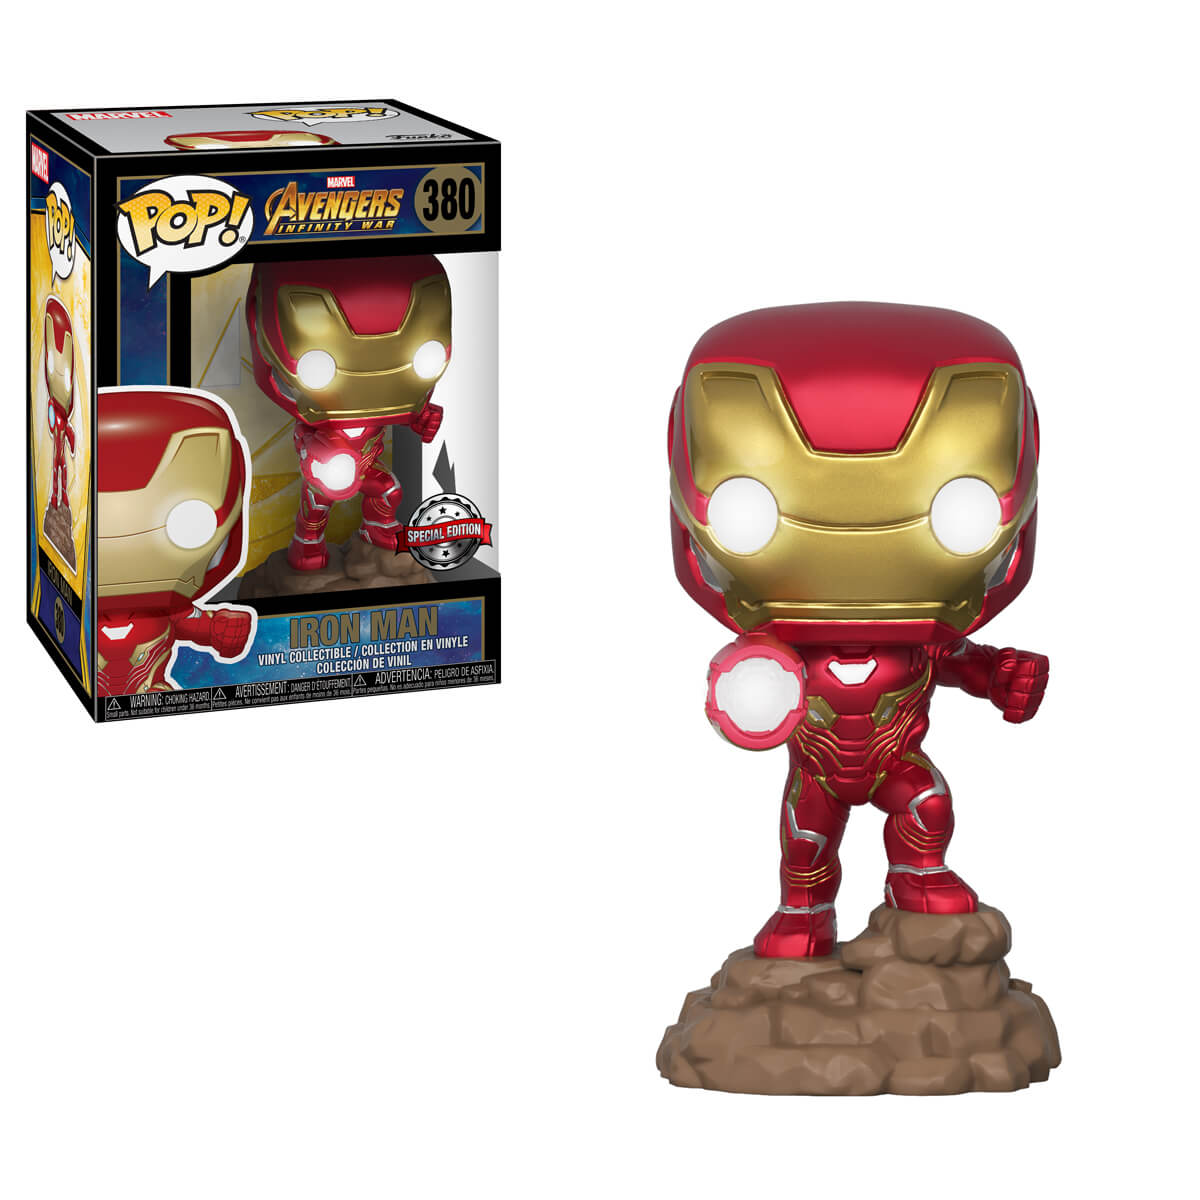 Pop! Vinyl Marvel Avengers : Infinity War Iron Man (Light Up) Funko Pop Exclusive